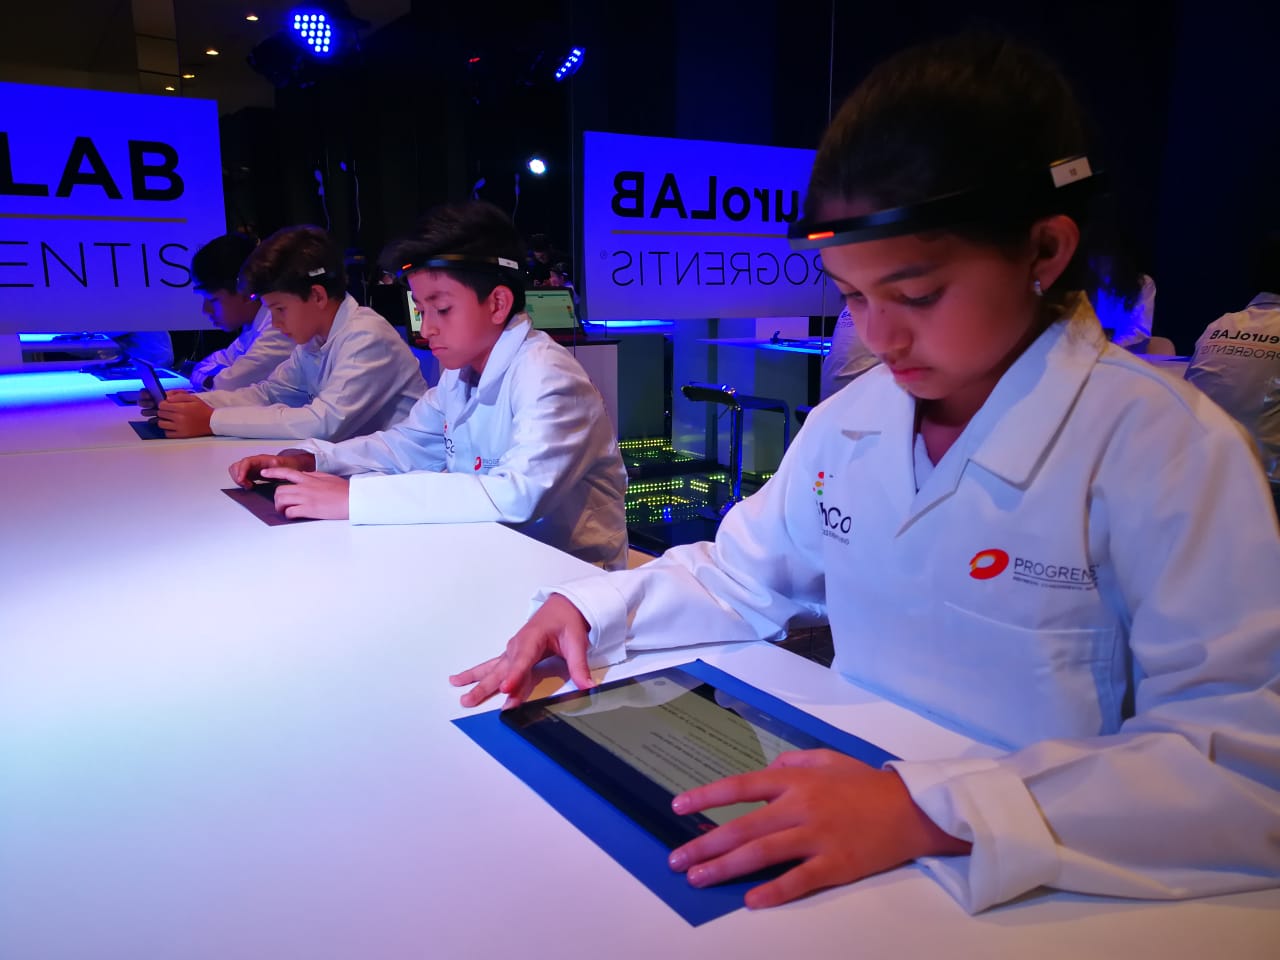 La neurociencia aplicada está ganando cada día más terreno y en el tema de la educación marca una diferencia. Actualmente estudiantes guatemaltecos  participan en un estudio a nivel mundial. (Foto Prensa Libre: Ingrid Reyes)